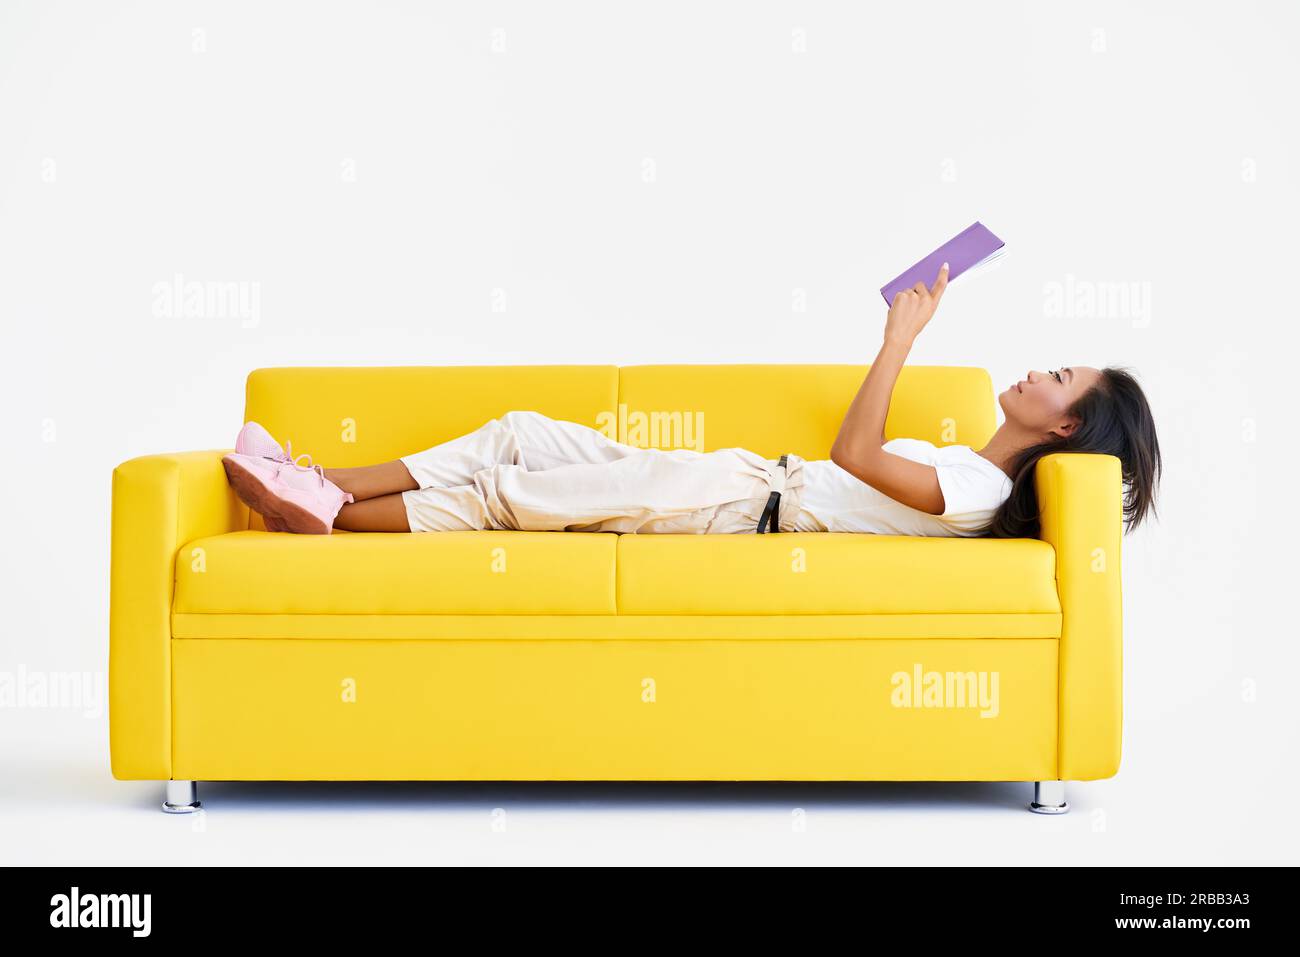 Hübsche asiatische Frau, die Buch liest, liegt auf der gemütlichen gelben Couch, Konzepte von Zuhause und Komfort, Hobby, Freizeit Stockfoto